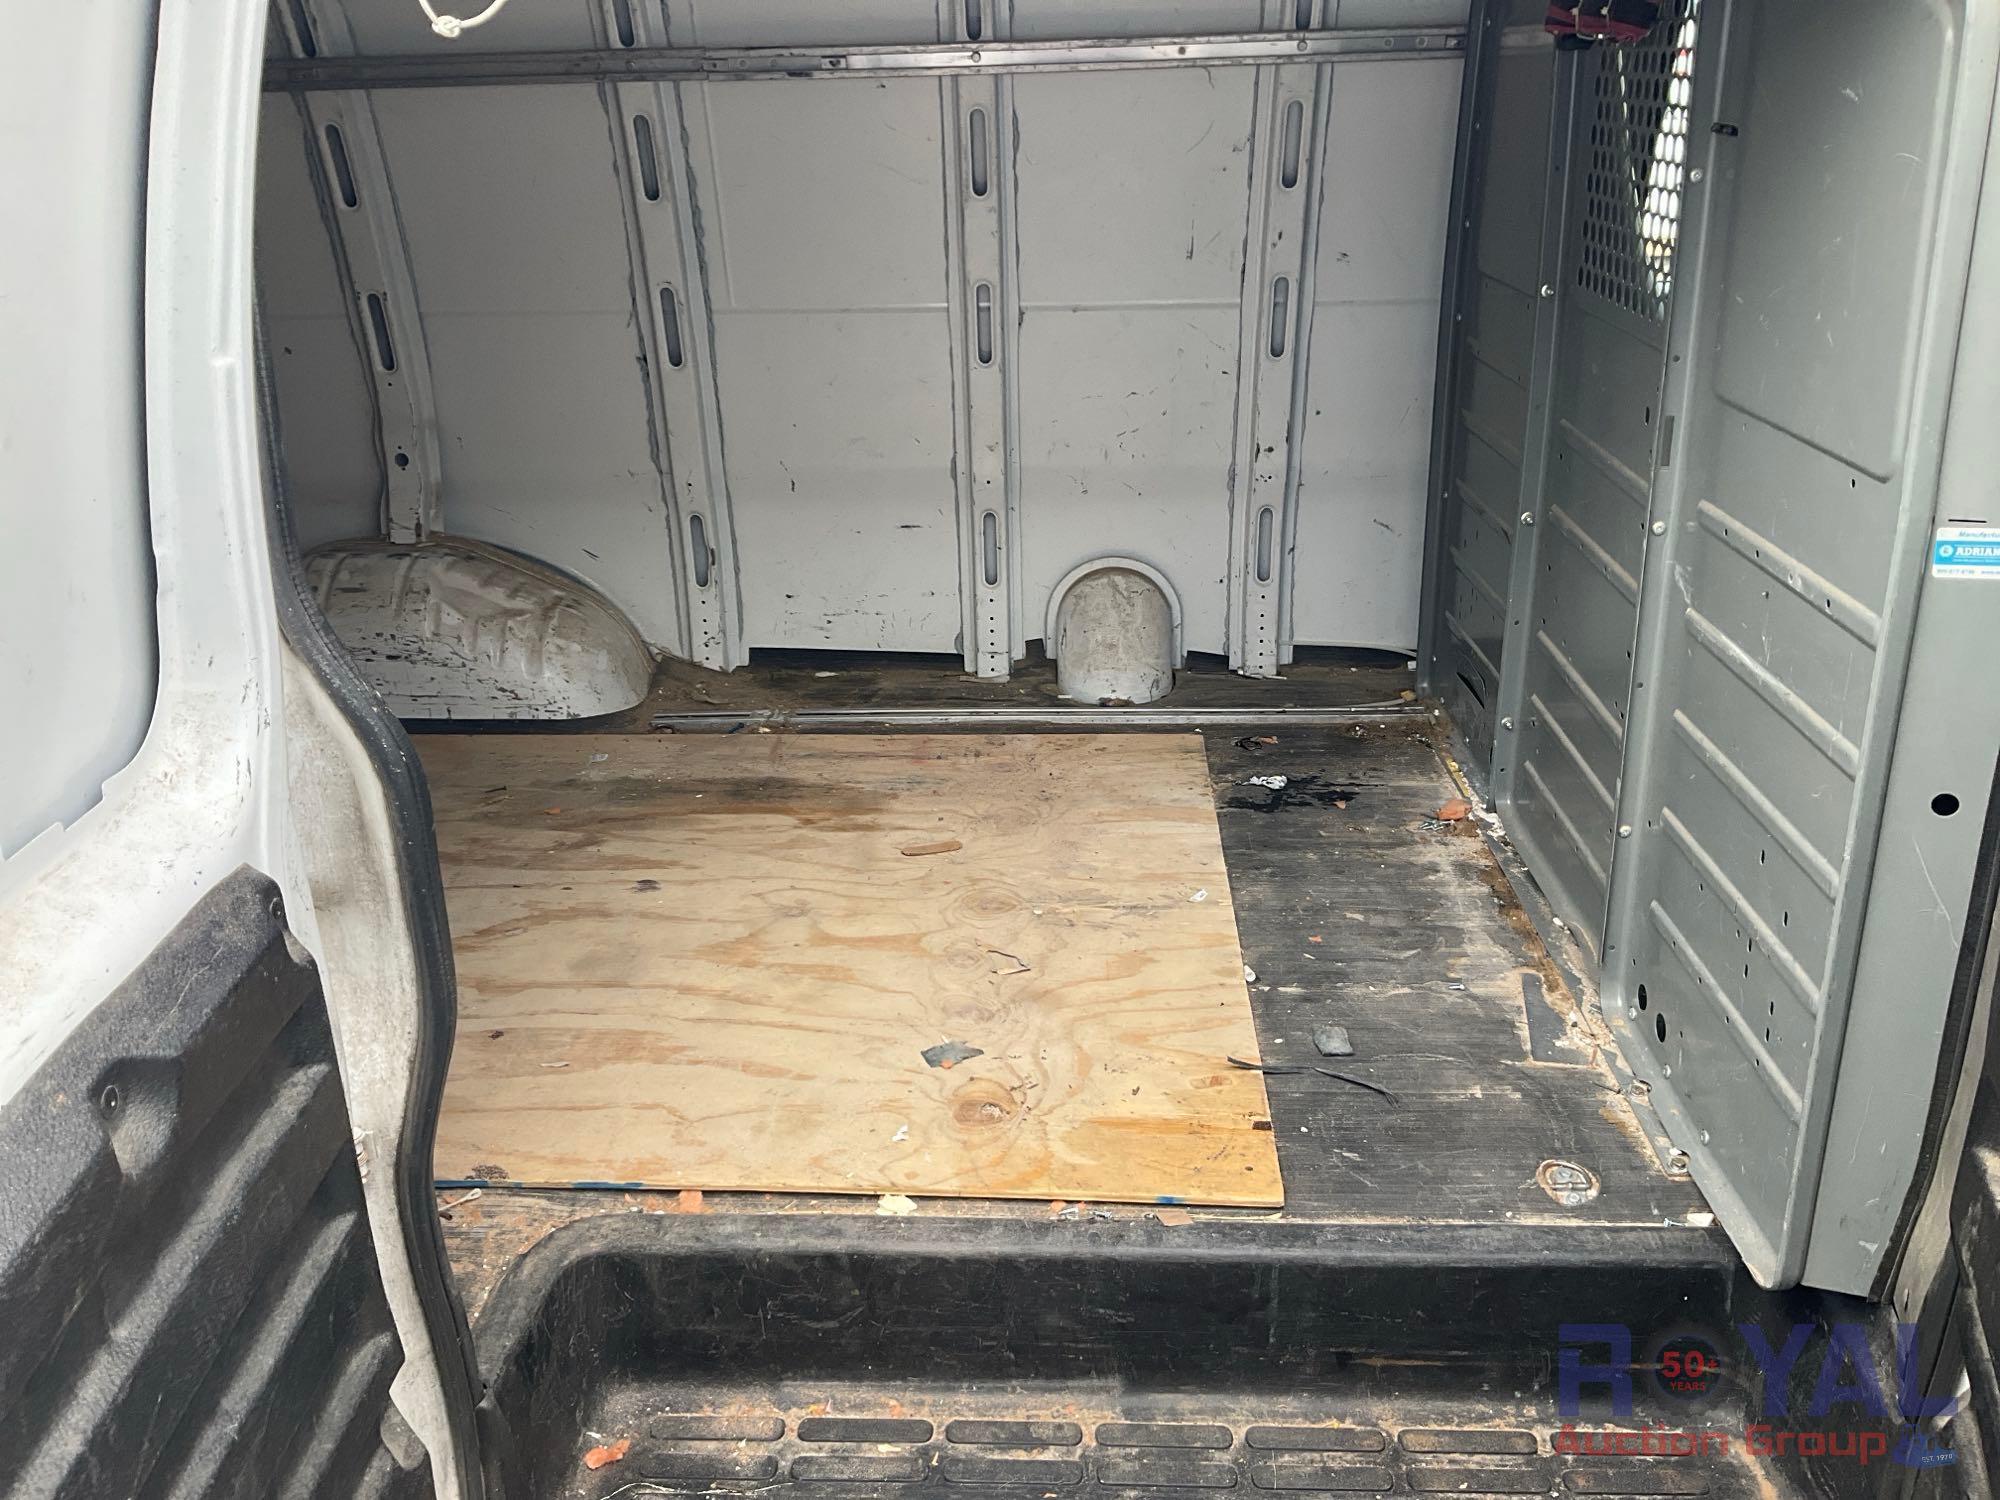 2014 Chevrolet Express Cargo Van